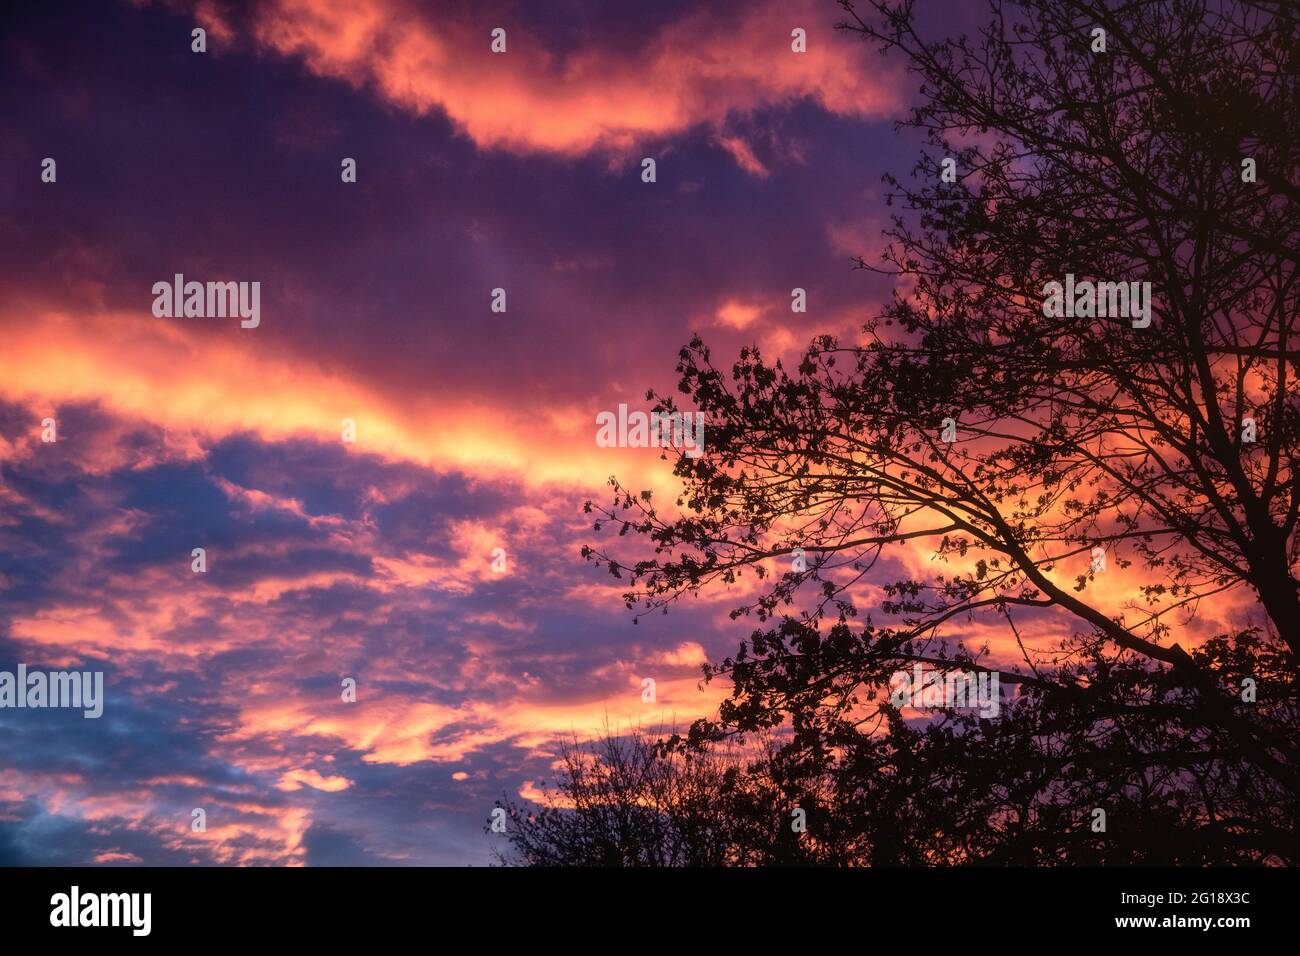 Dramatischer Panorama Wolkenhimmel mit schrillen Farben in hoffnungsvolle Jenseits Stimmung. Morgenröte im Frühling mit spektakulären Wolken. Stock Photo